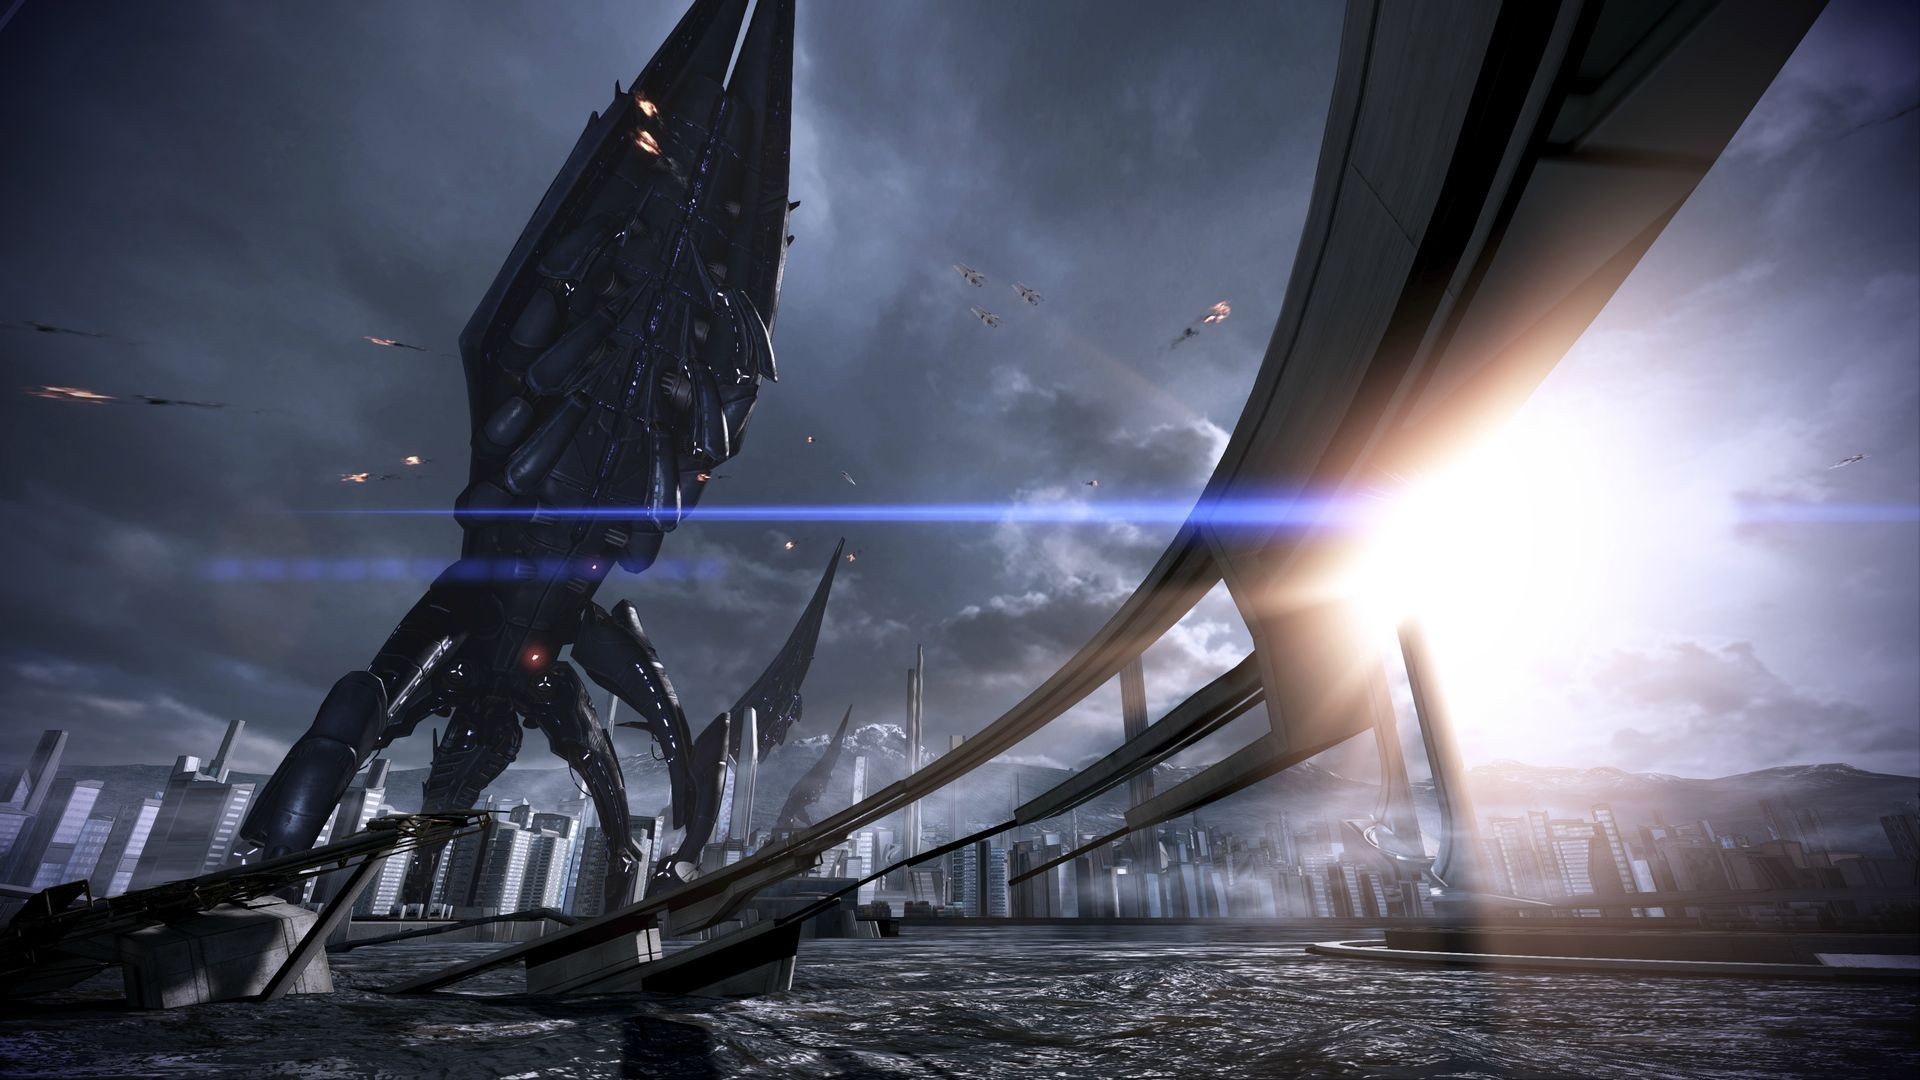 1920x1080 Reaper Destruction - Mass Effect 3 Concept Art | The Reaper Threat |  Pinterest | Video games and Universe